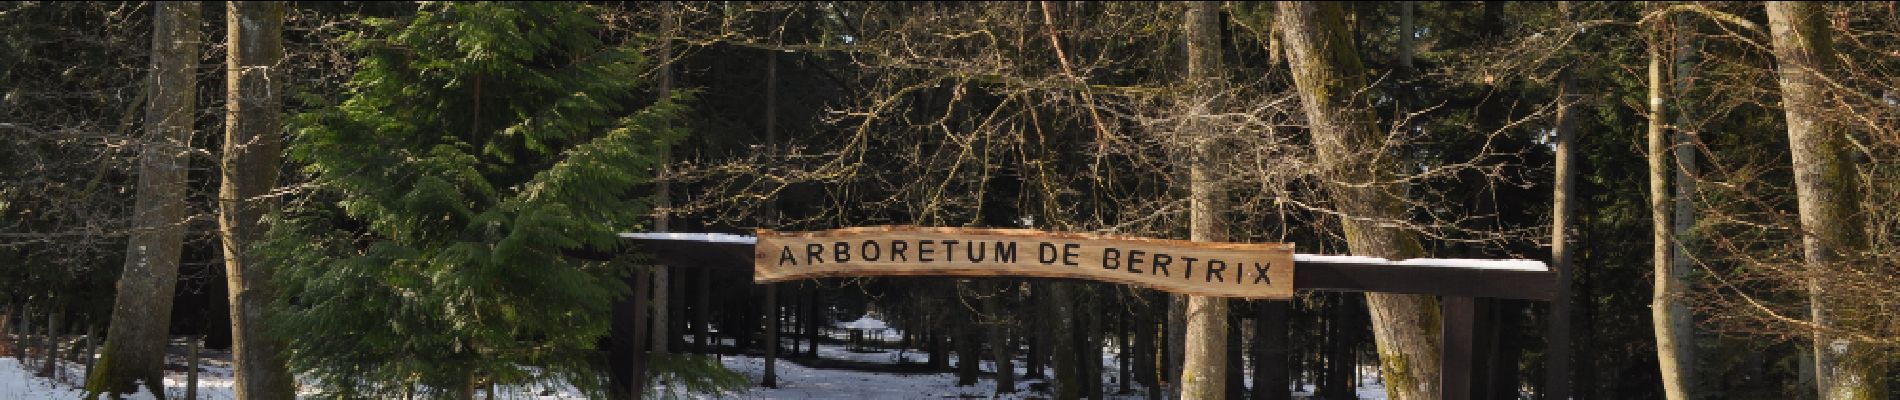 Point of interest Bertrix - Possibilité de visiter un arboretum - Photo